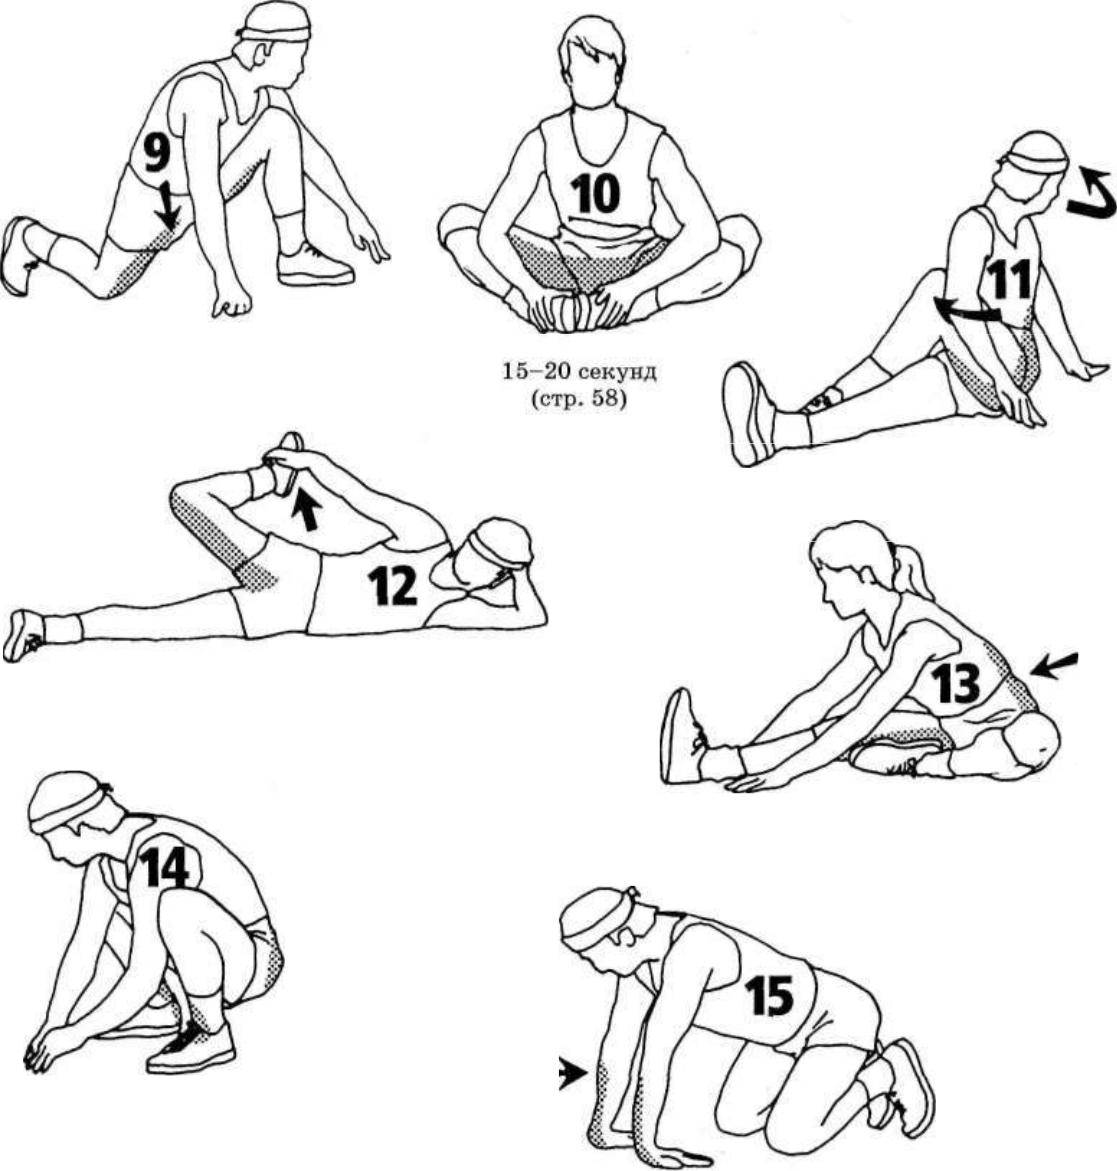 Стретчинг для растяжки мышц: виды, правила, комплекс упражнений